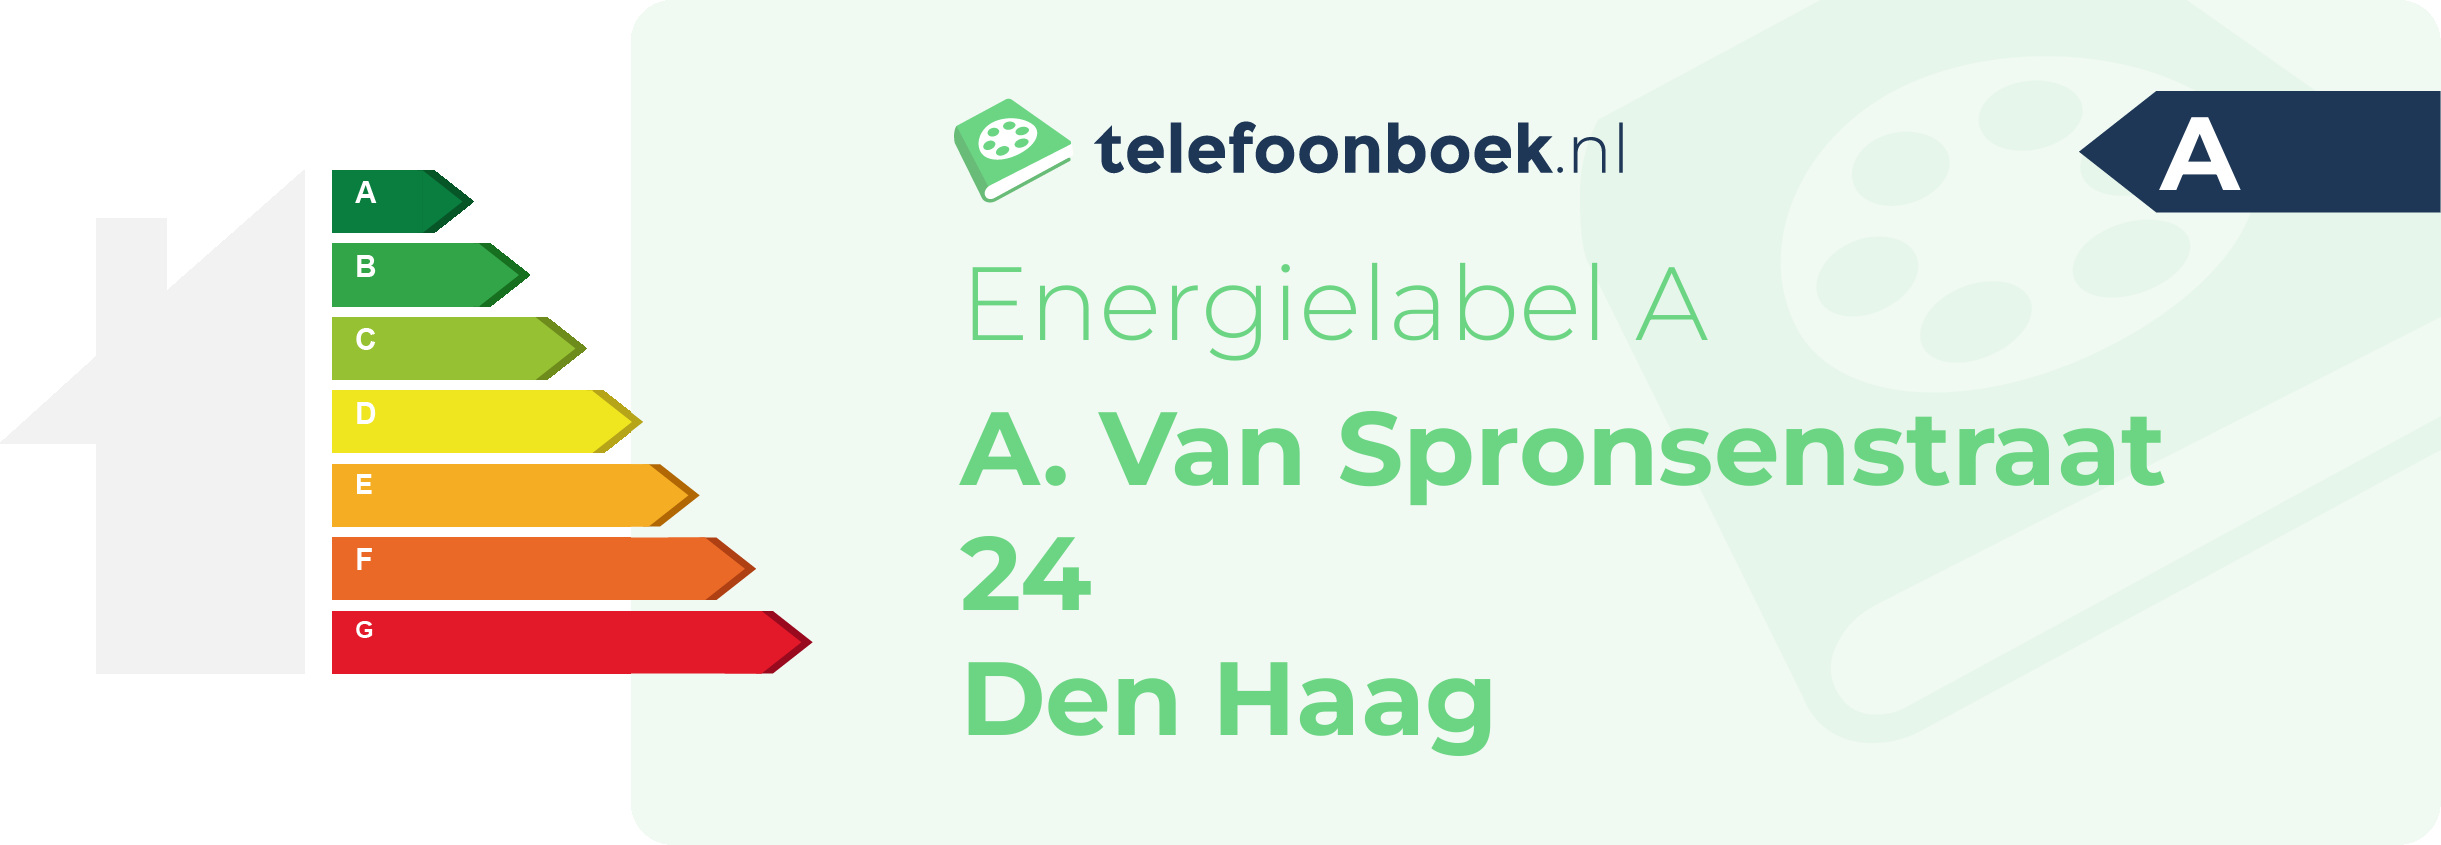 Energielabel A. Van Spronsenstraat 24 Den Haag